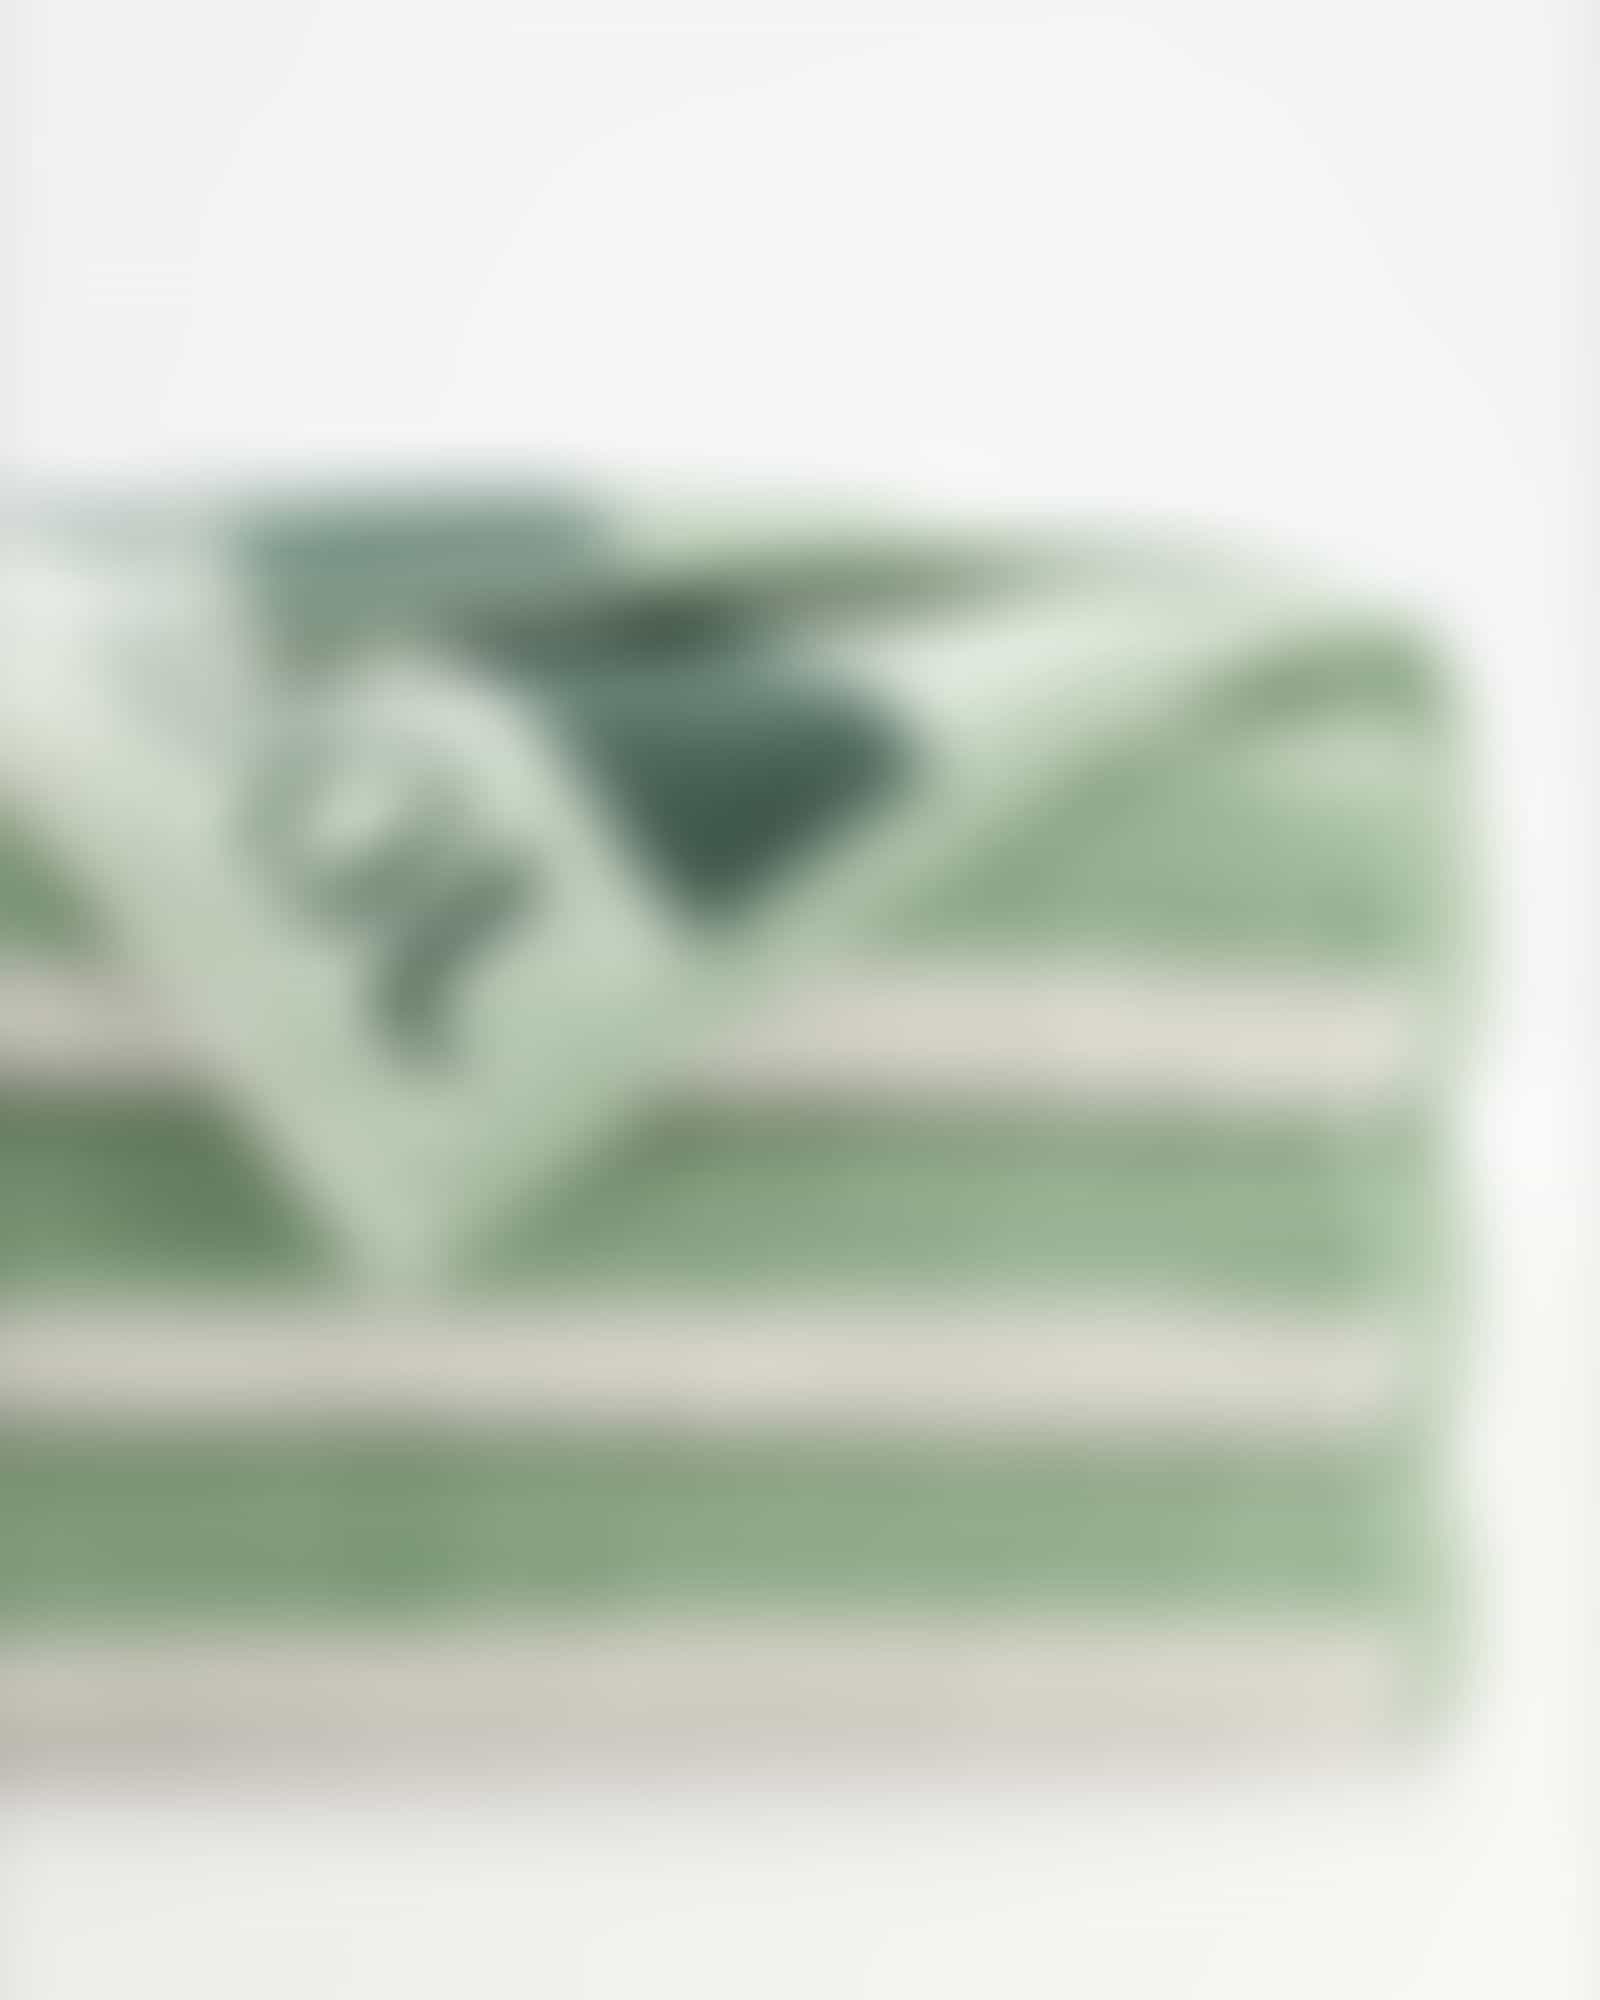 JOOP! Handtücher Vibe Streifen 1698 - Farbe: salbei - 44 - Handtuch 50x100 cm